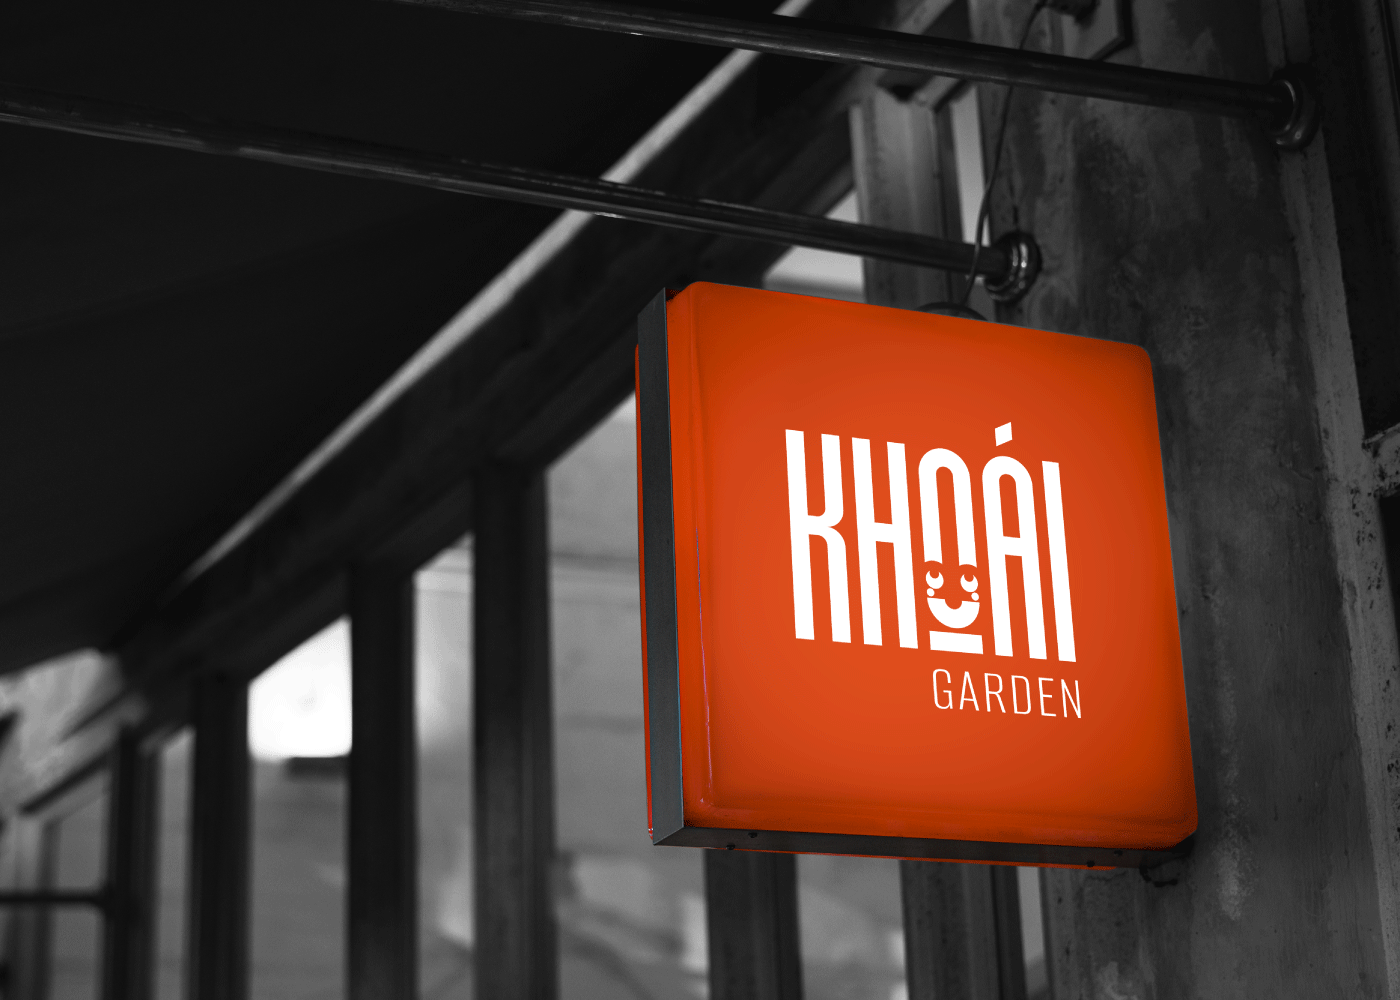 khoai-garden-restaurant-branding